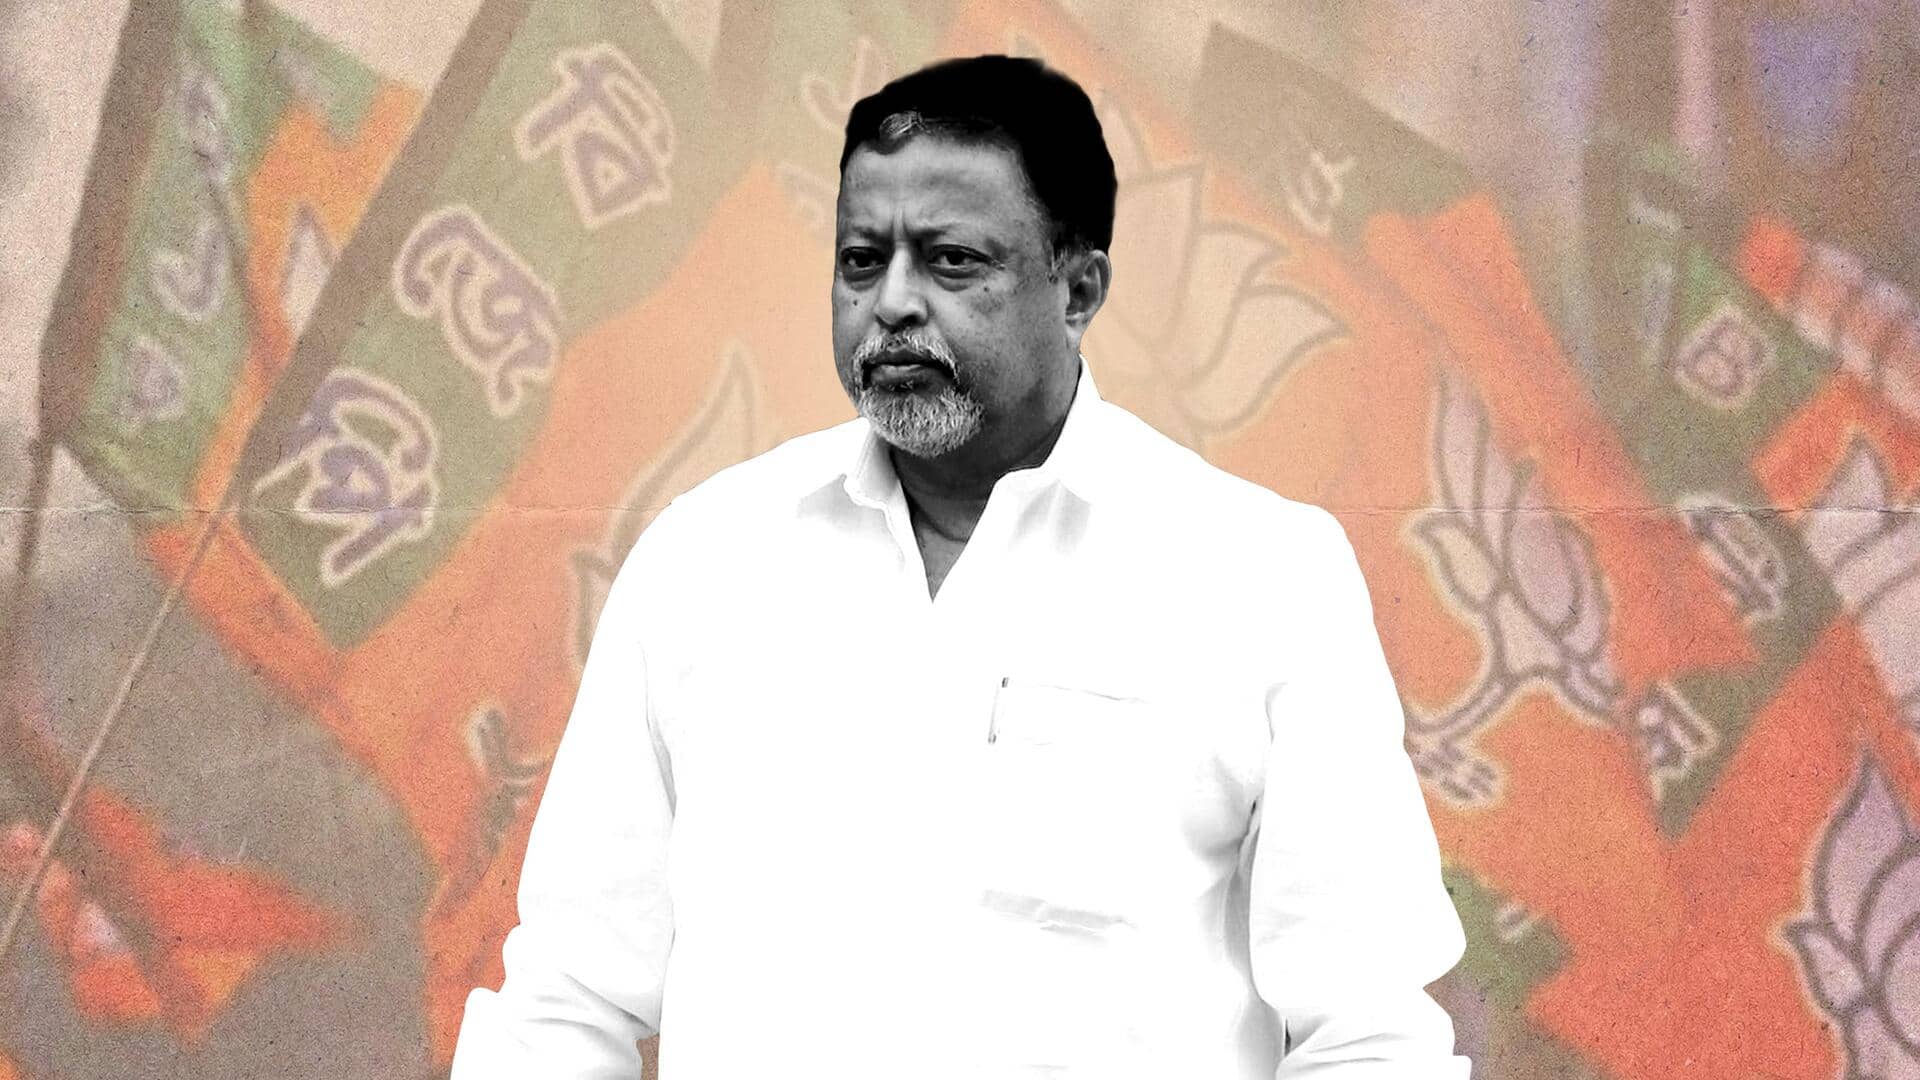 TMC नेता मुकल रॉय की भाजपा में वापसी की अटकलें तेज, जानिए क्या है पूरा मामला